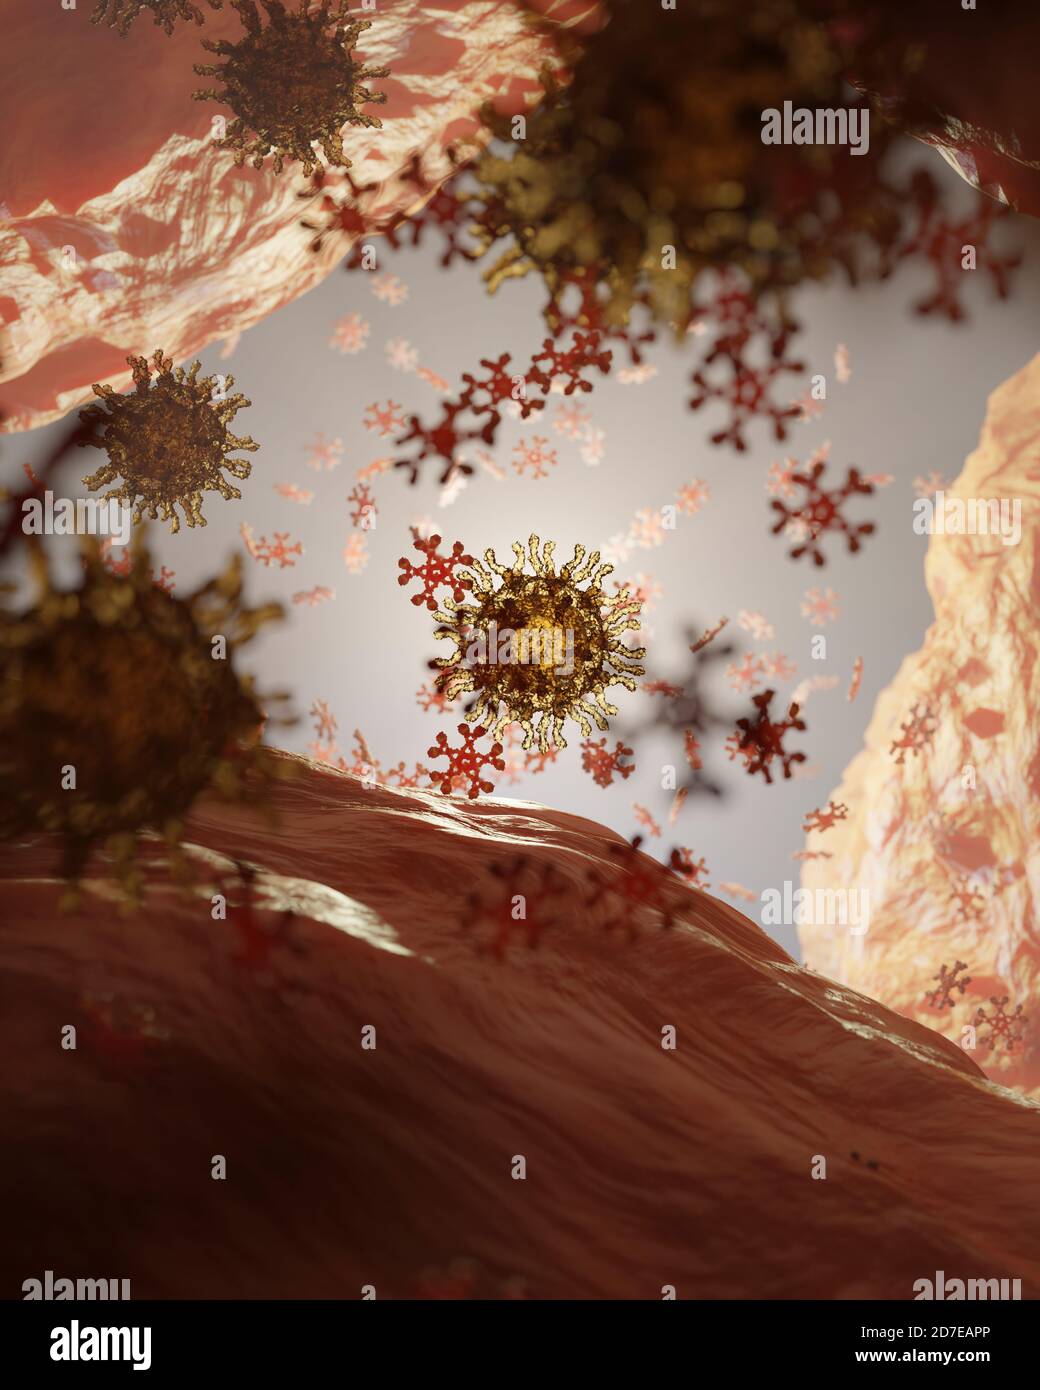 Risposta immunitaria ad un antigene (virus o patogeno) mediante rilascio di immunoglobulina M (IgM), qui colorata in rosso e con una struttura pentamerica (fiocco di neve Foto Stock